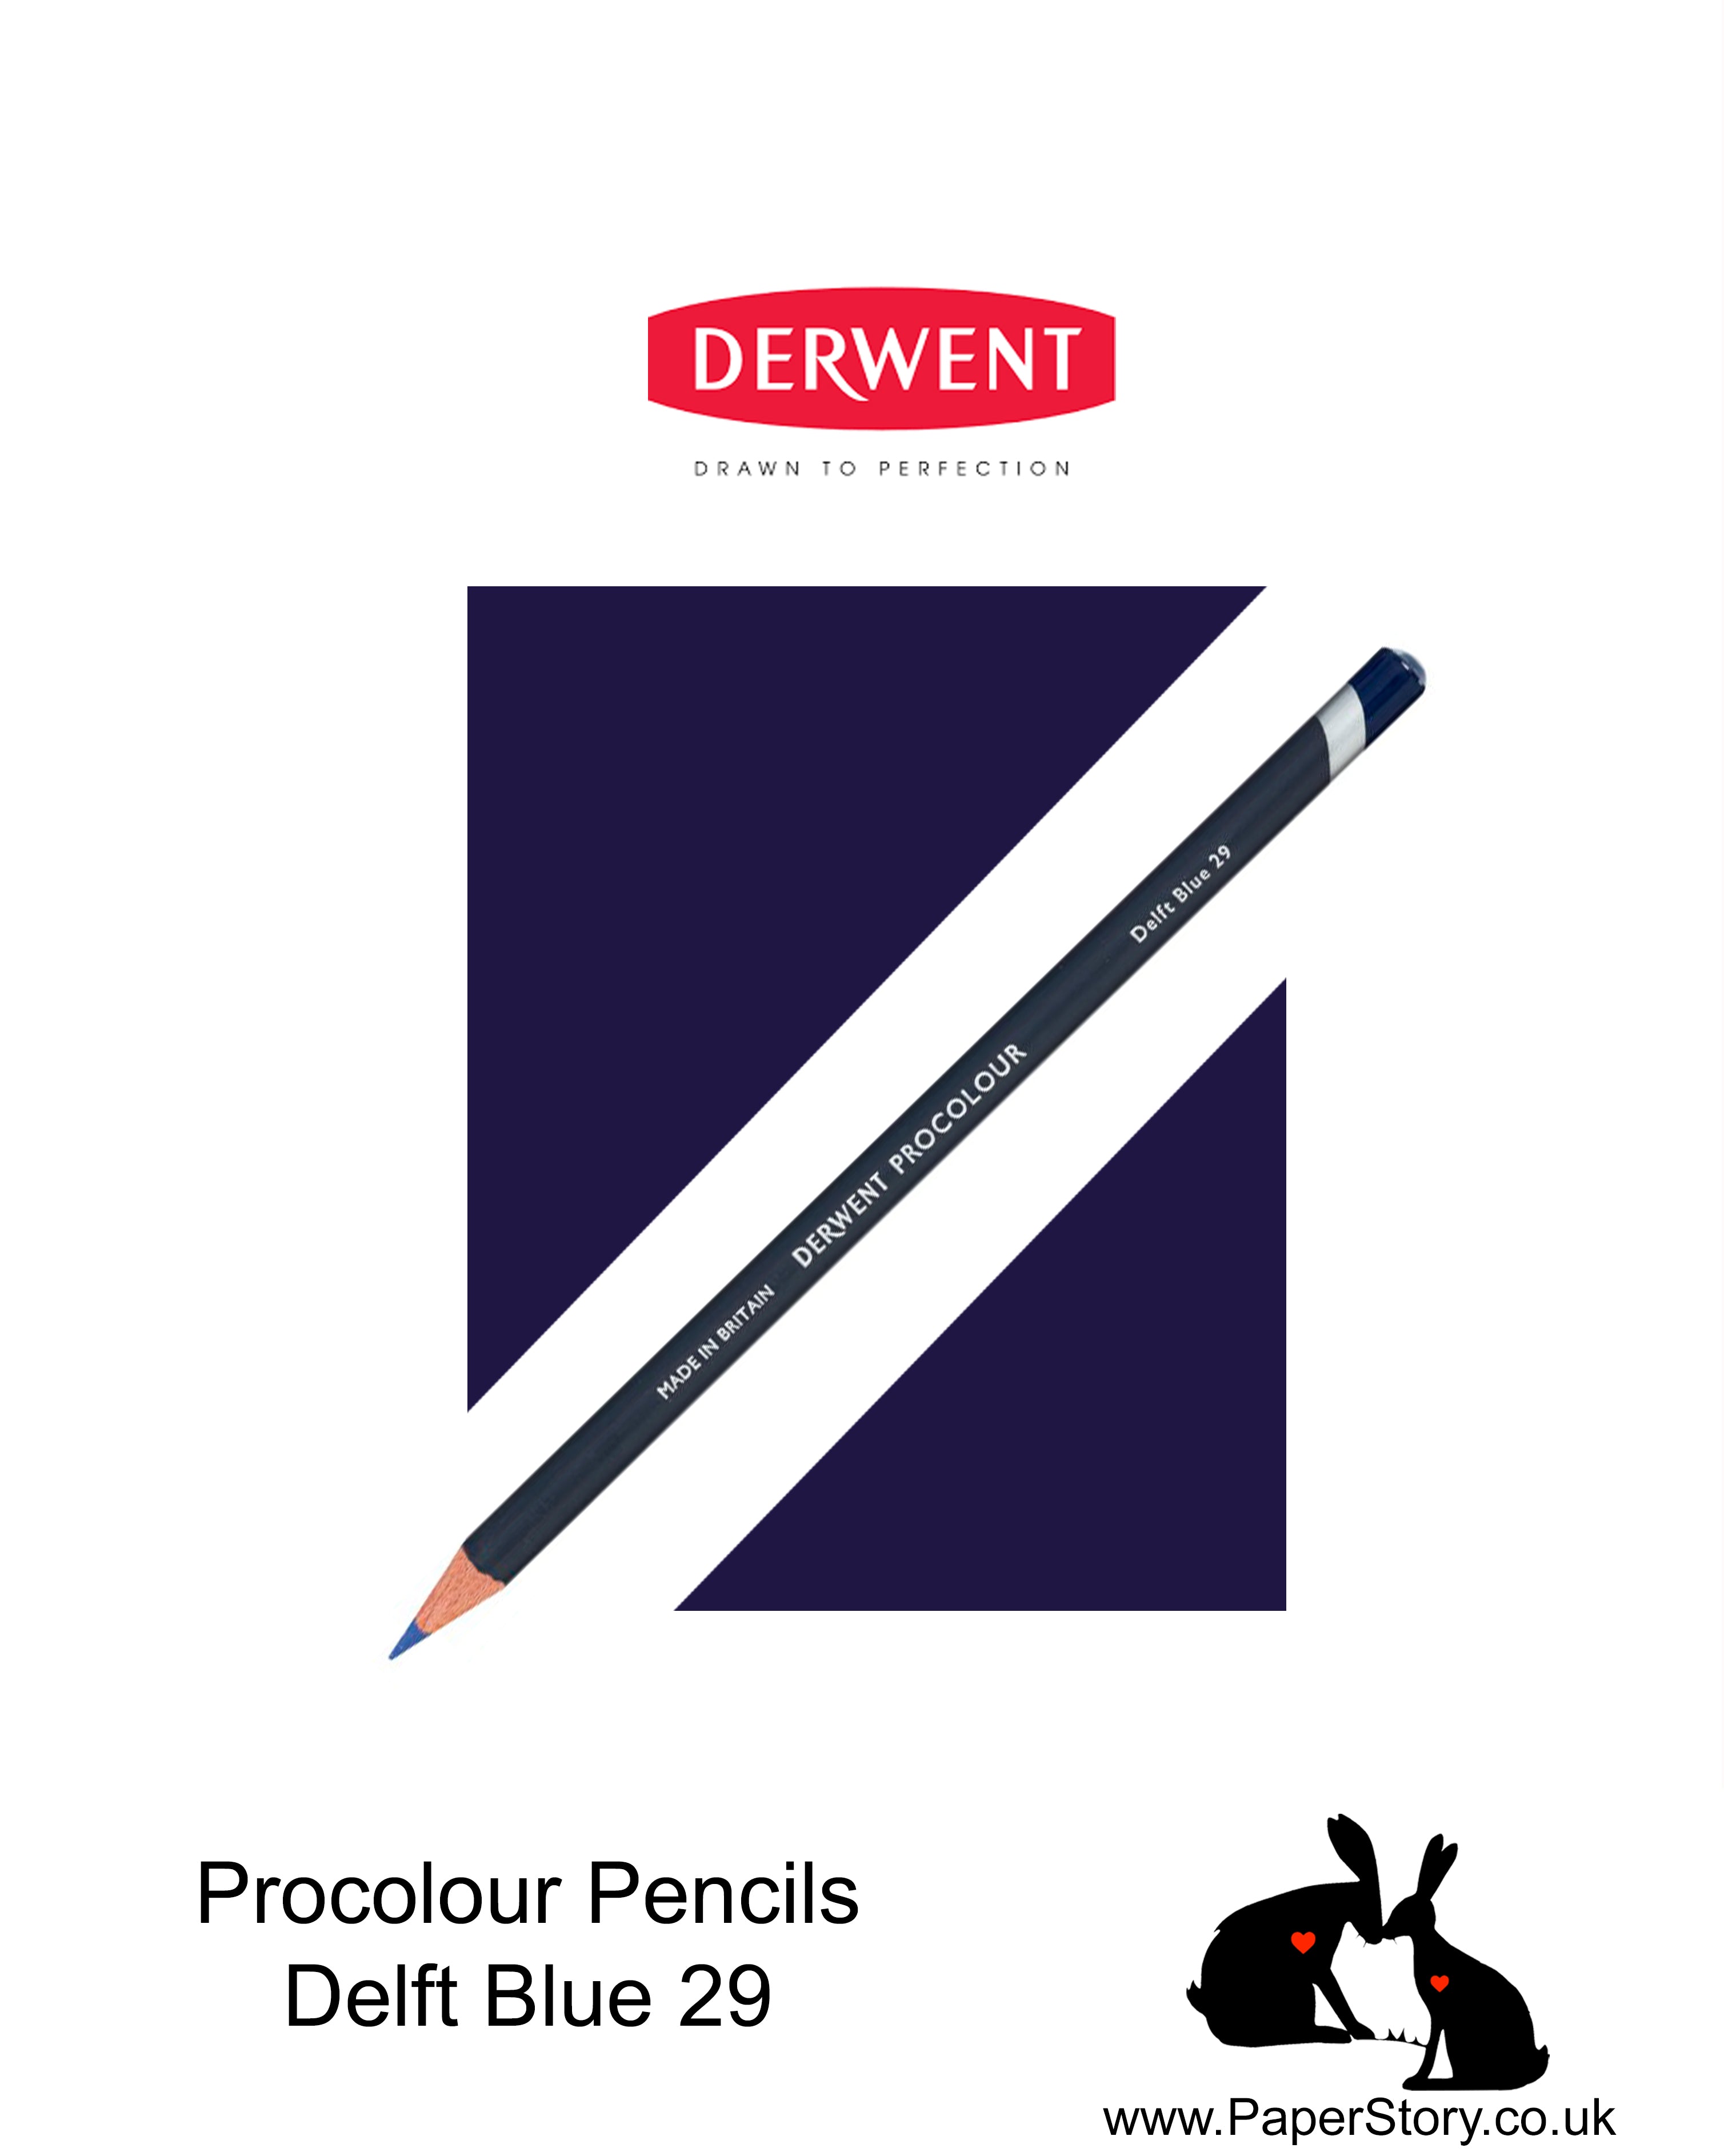 Derwent Procolour pencil Delft Blue 29